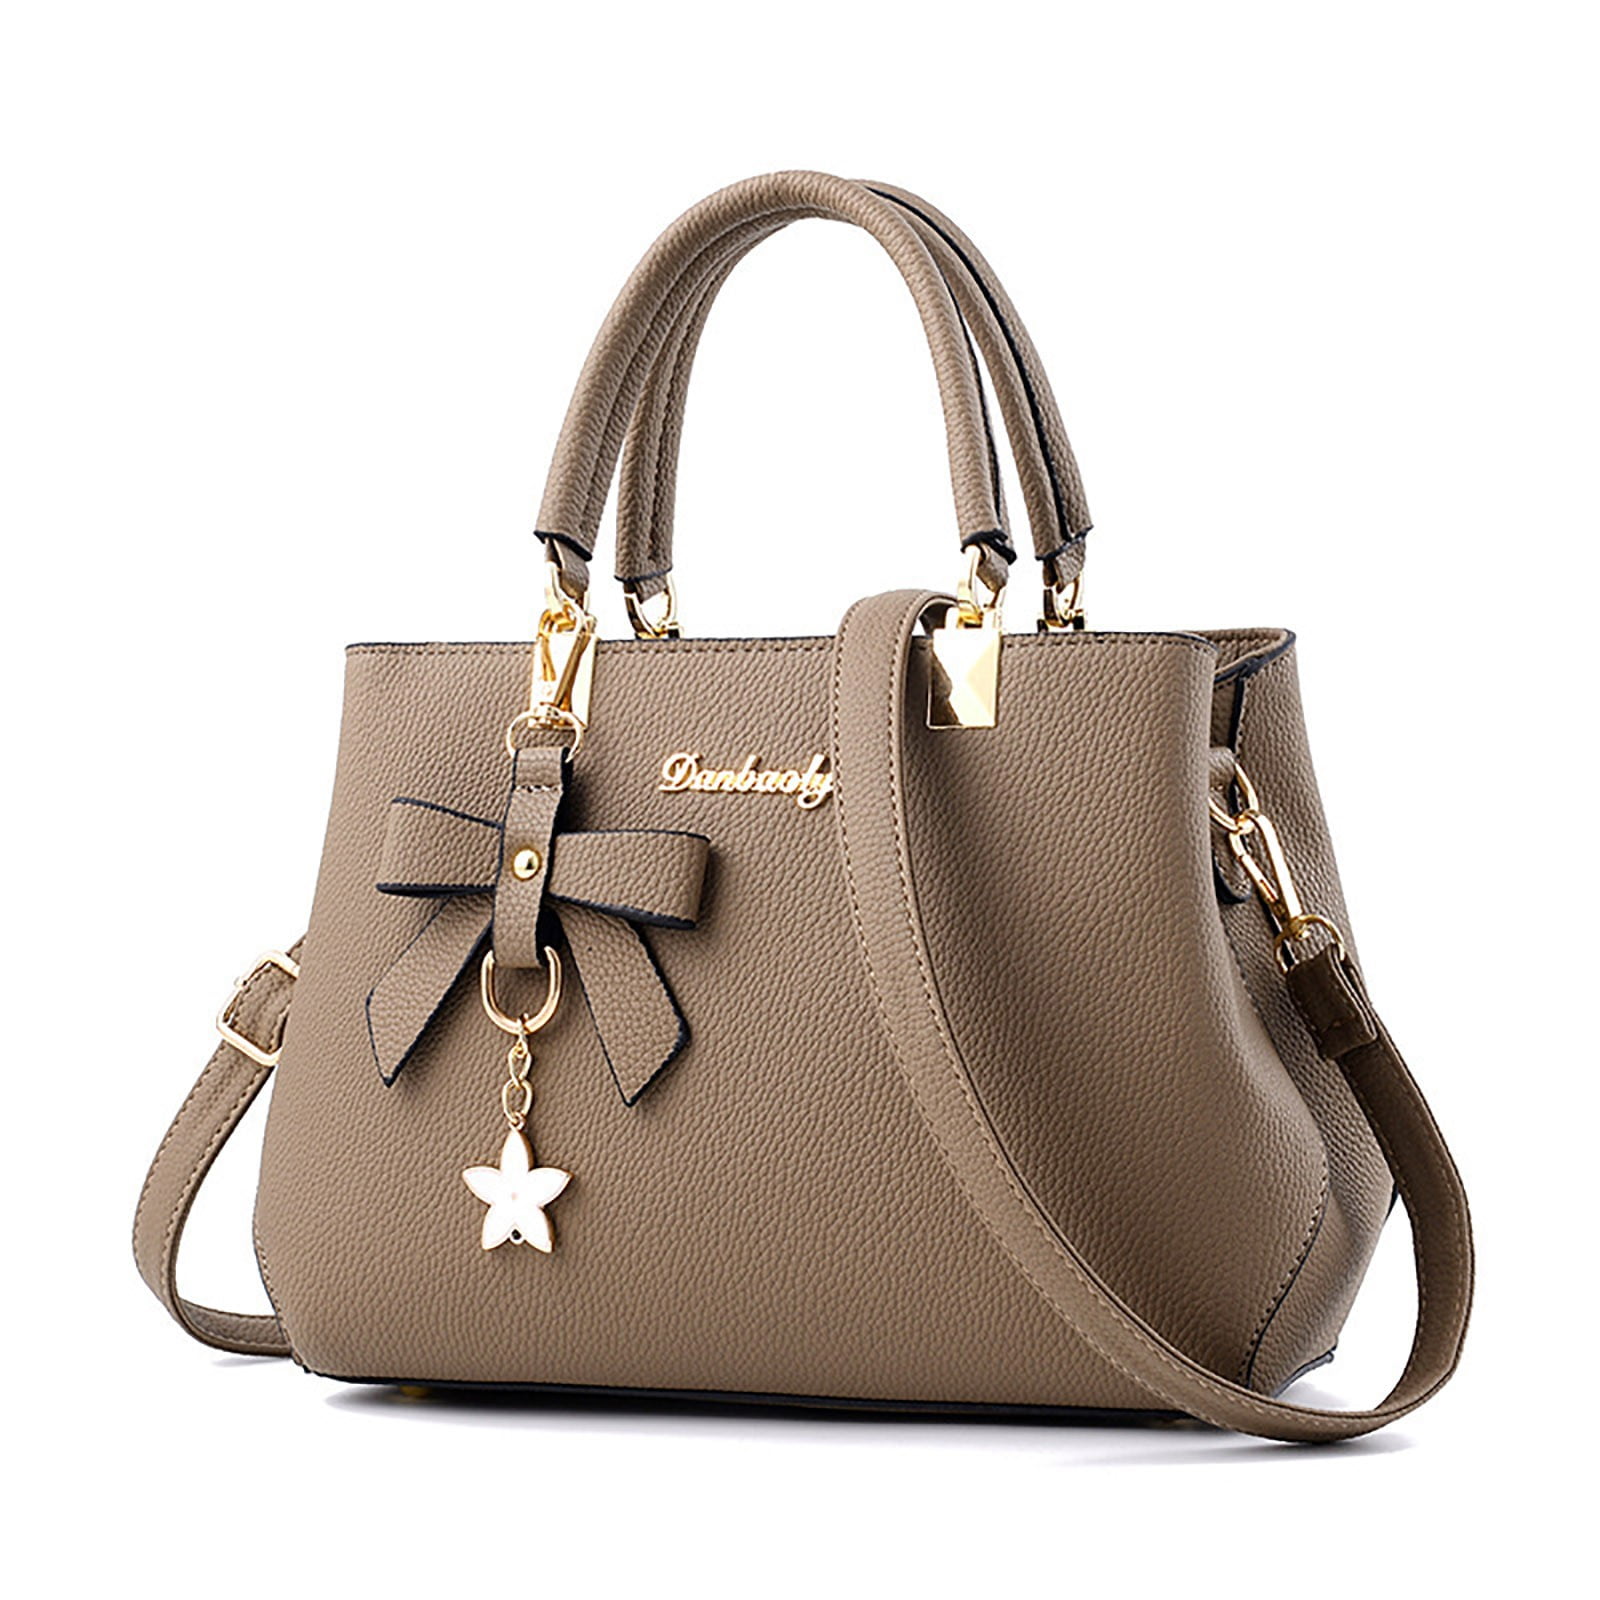 keusn fashion womens tote bag handbags ladies purse satchel